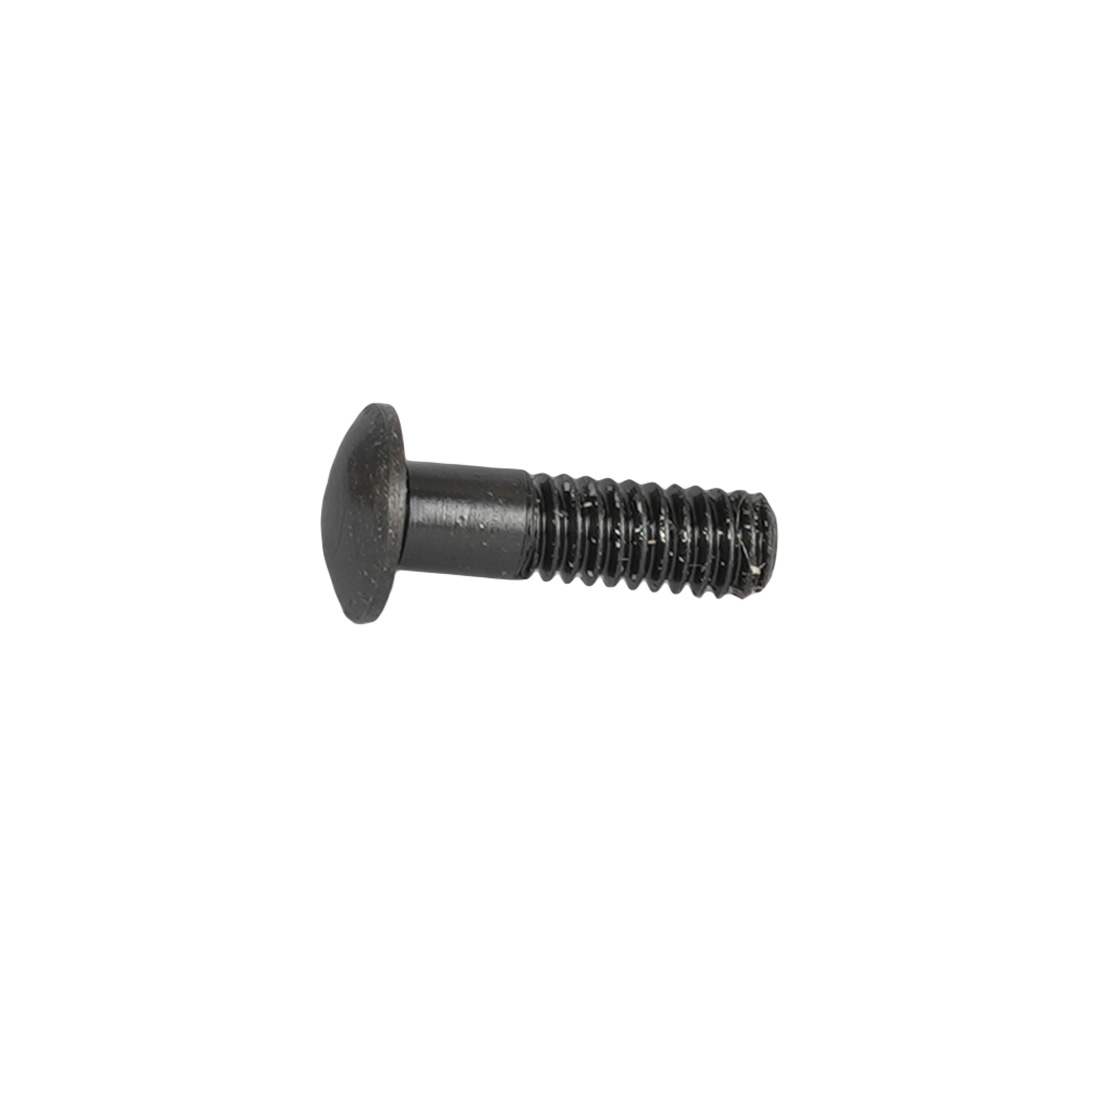 Produktbild von Campagnolo UT-WH160 Magnetische Nippeleinbauhilfe für Bullet / Bullet Ultra